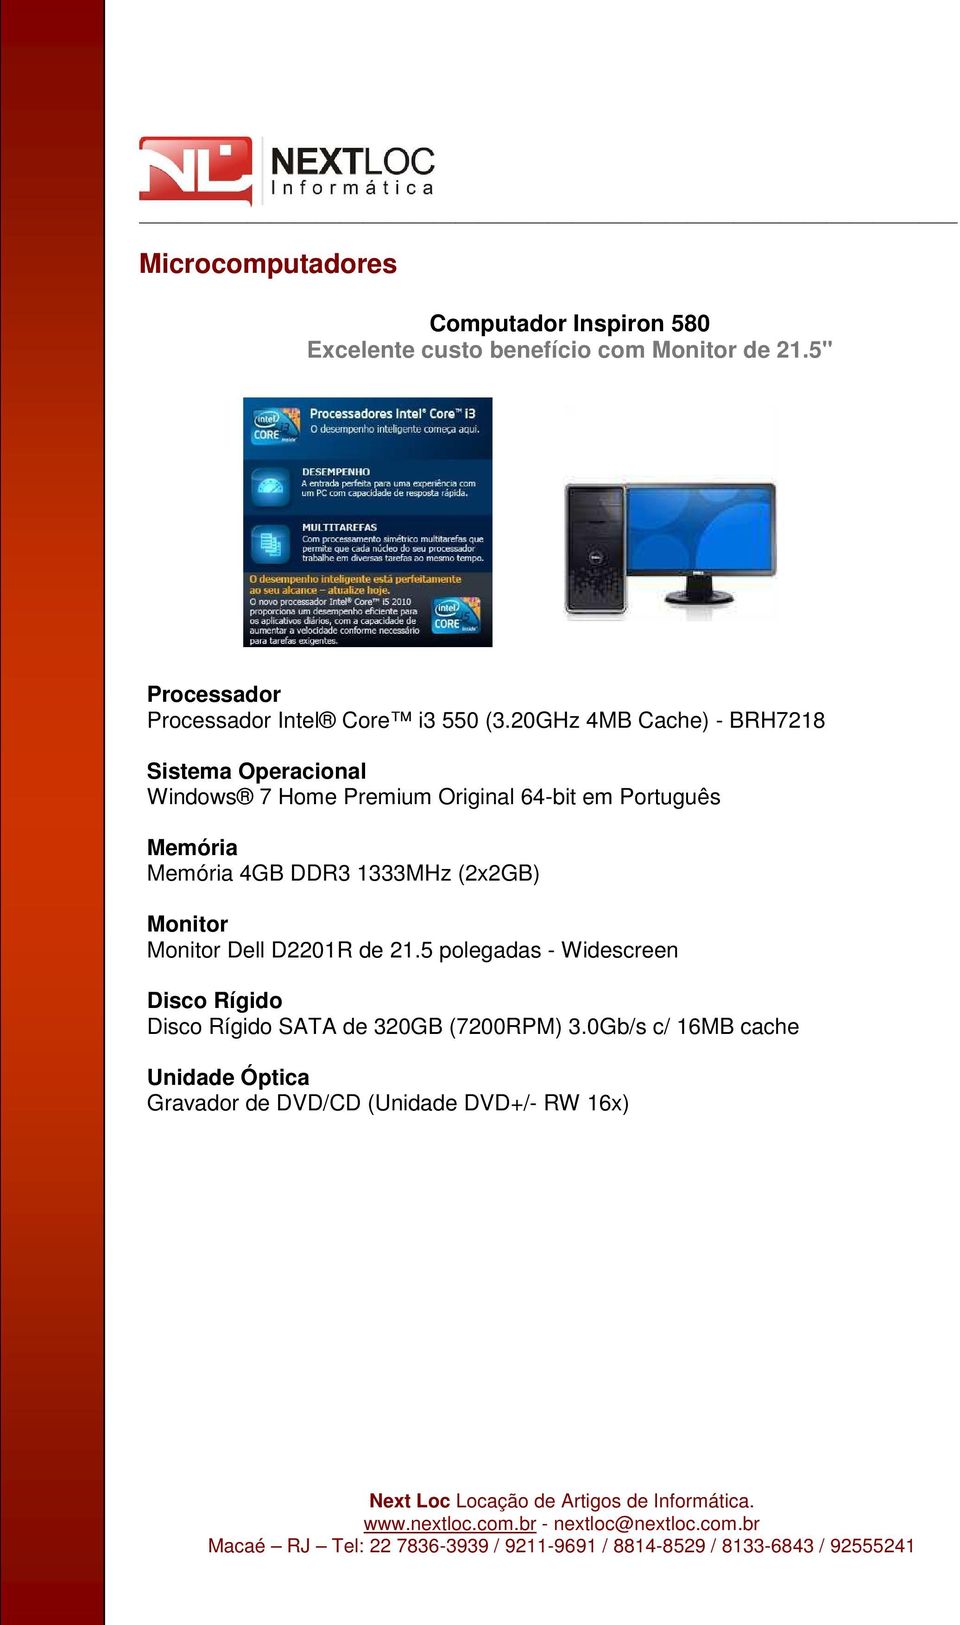 20GHz 4MB Cache) - BRH7218 Sistema Operacional Windows 7 Home Premium Original 64-bit em Português Memória Memória